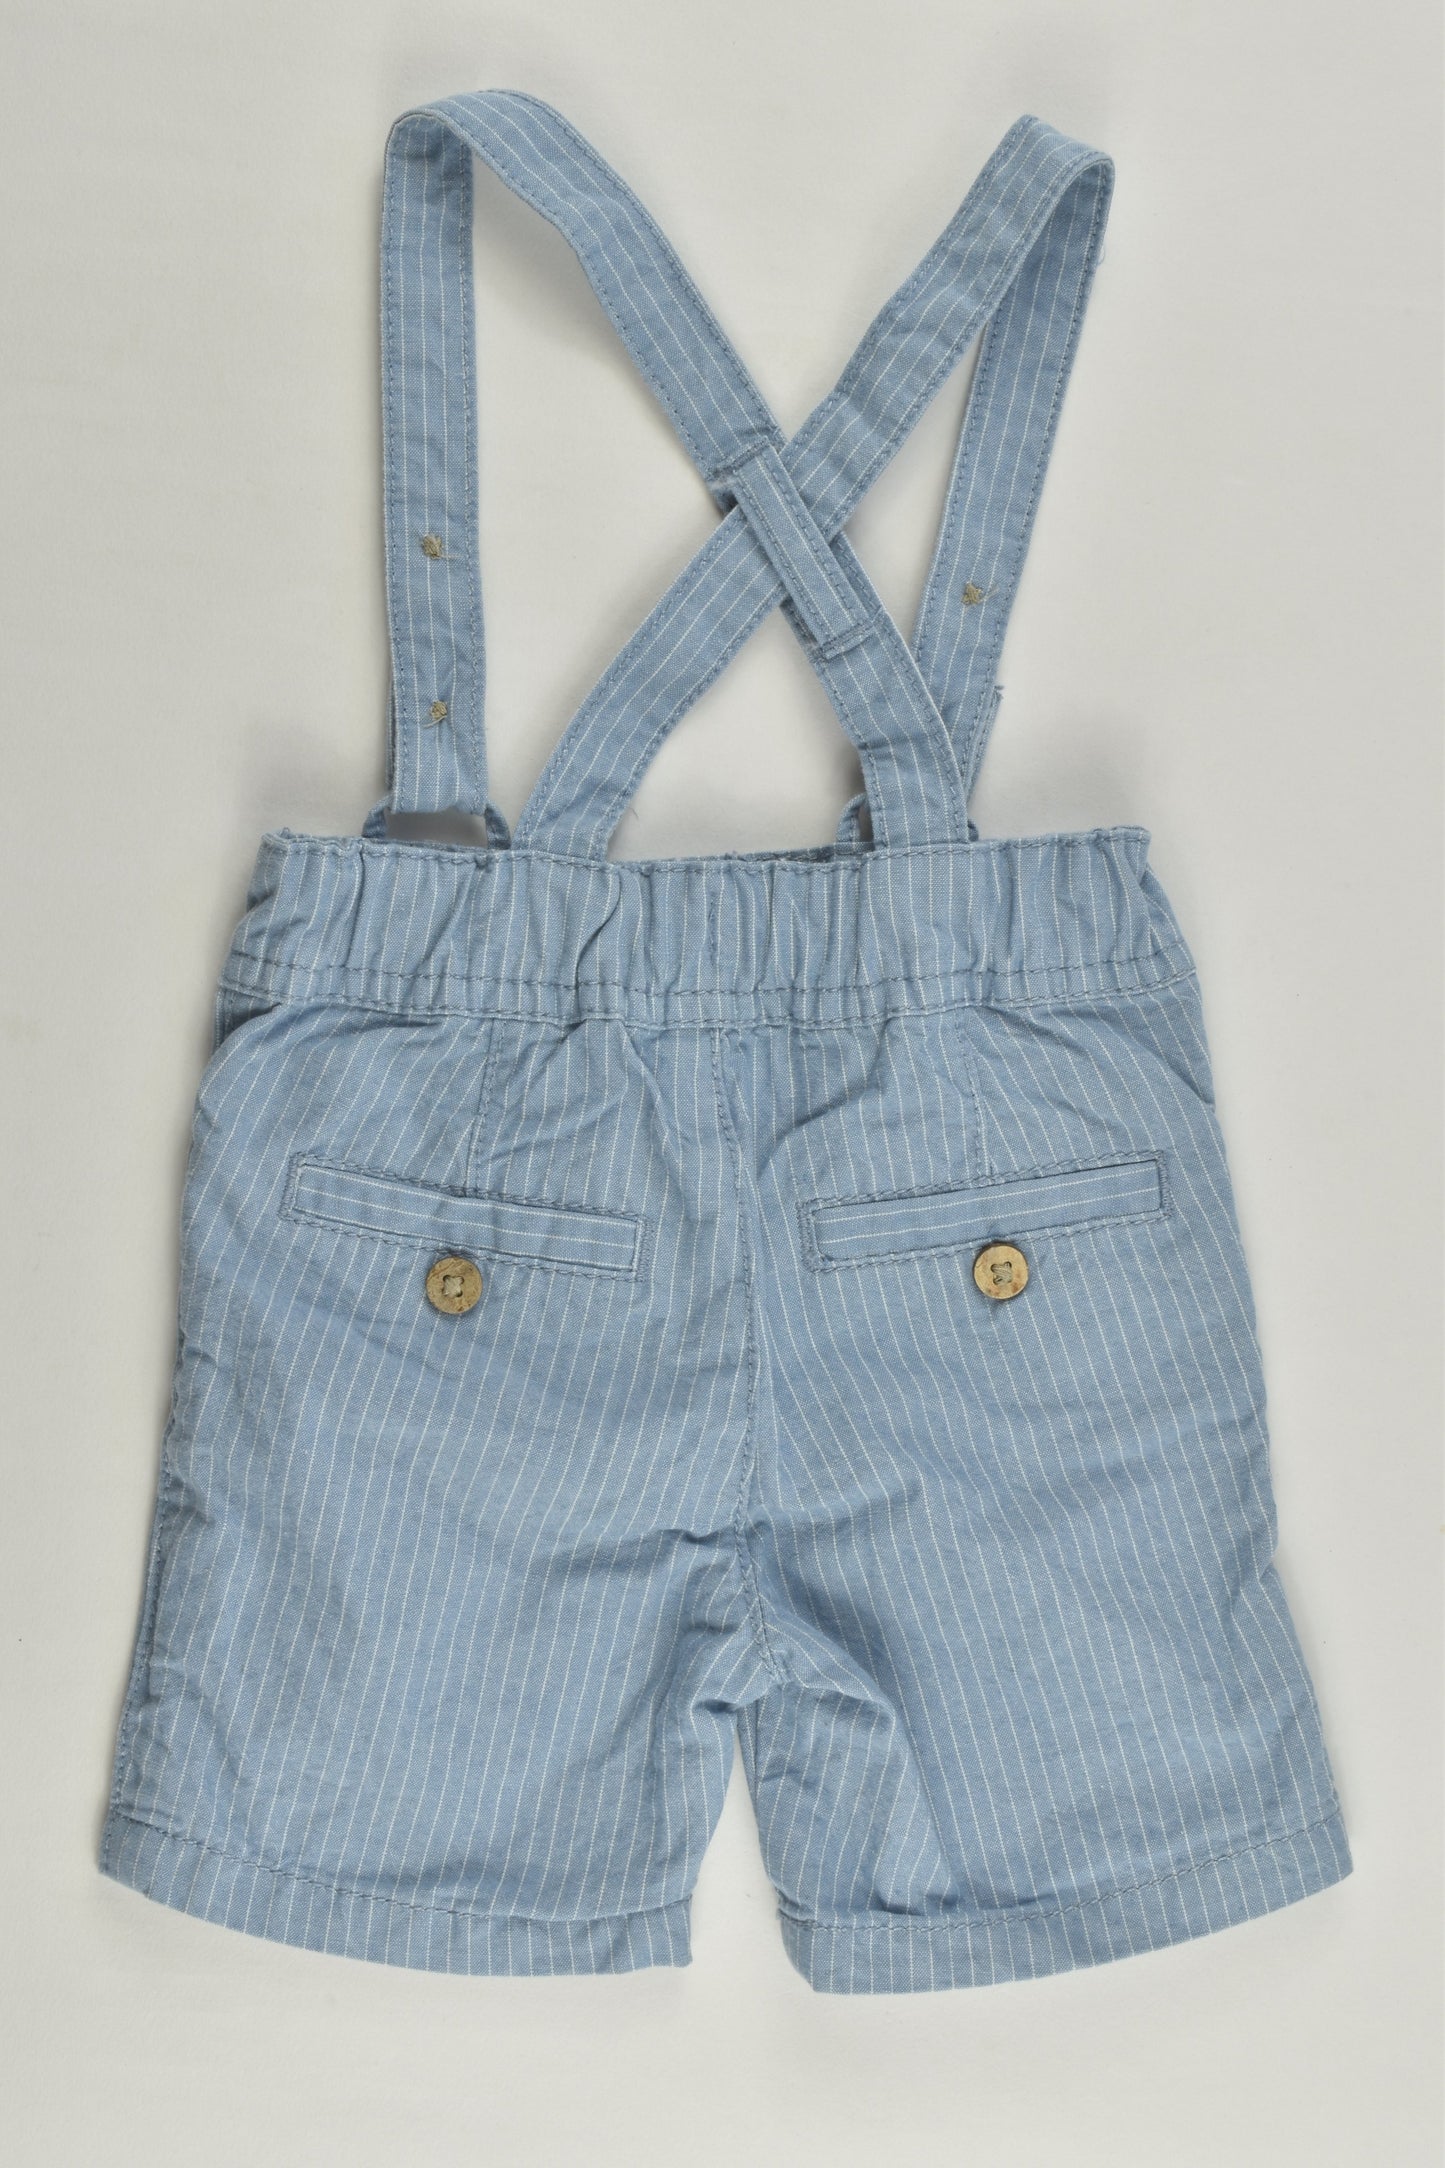 Matalan Size 0000 (Newborn) Striped Suspender Shorts